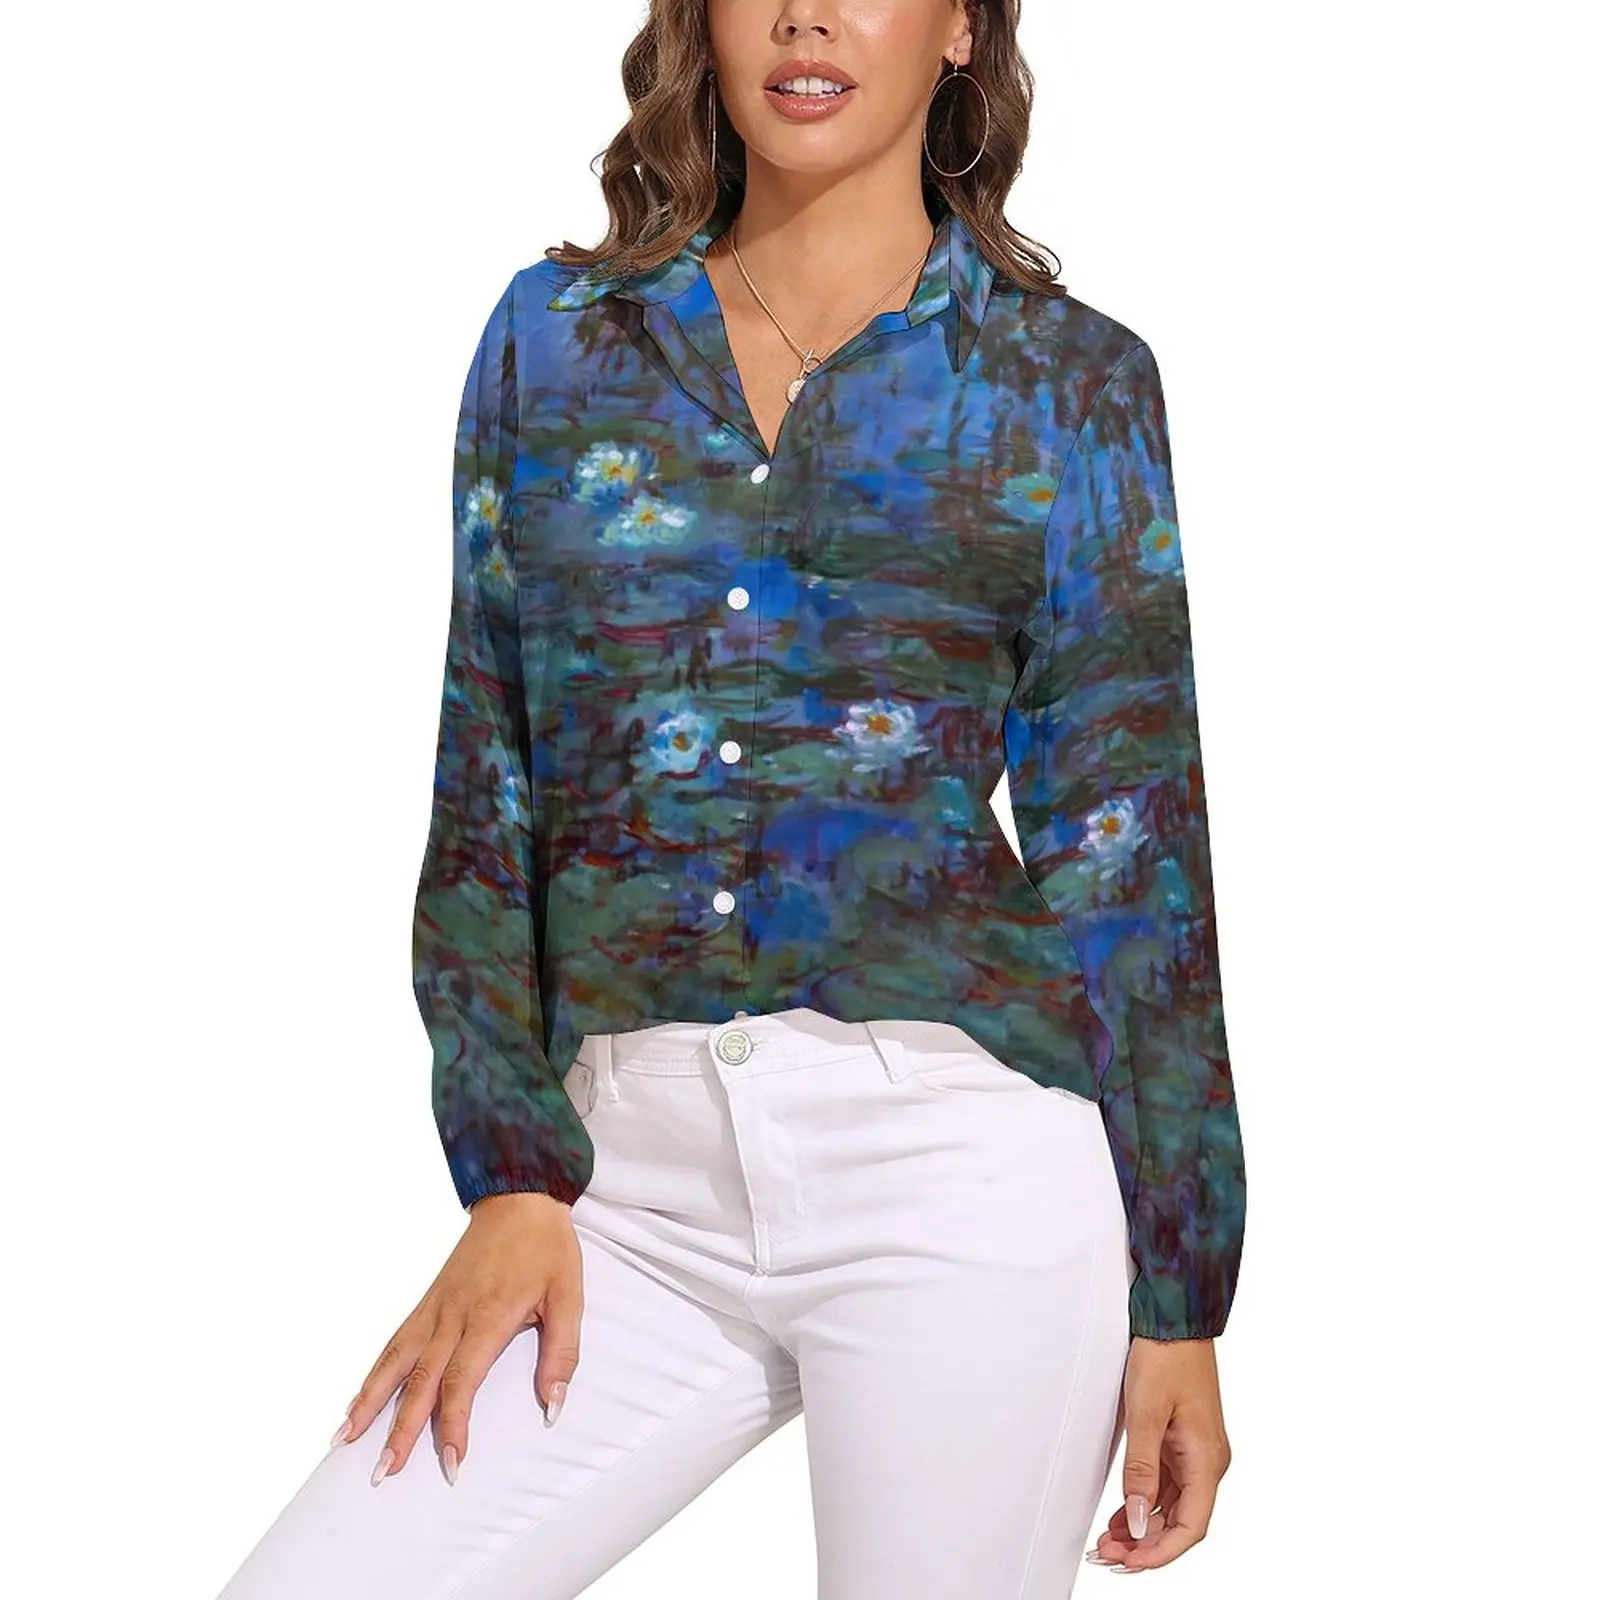 

Женская блузка с длинным рукавом, голубая офисная блузка с графическим принтом Клода Моне и лилии, модная рубашка в Корейском стиле, Осенний Топ большого размера